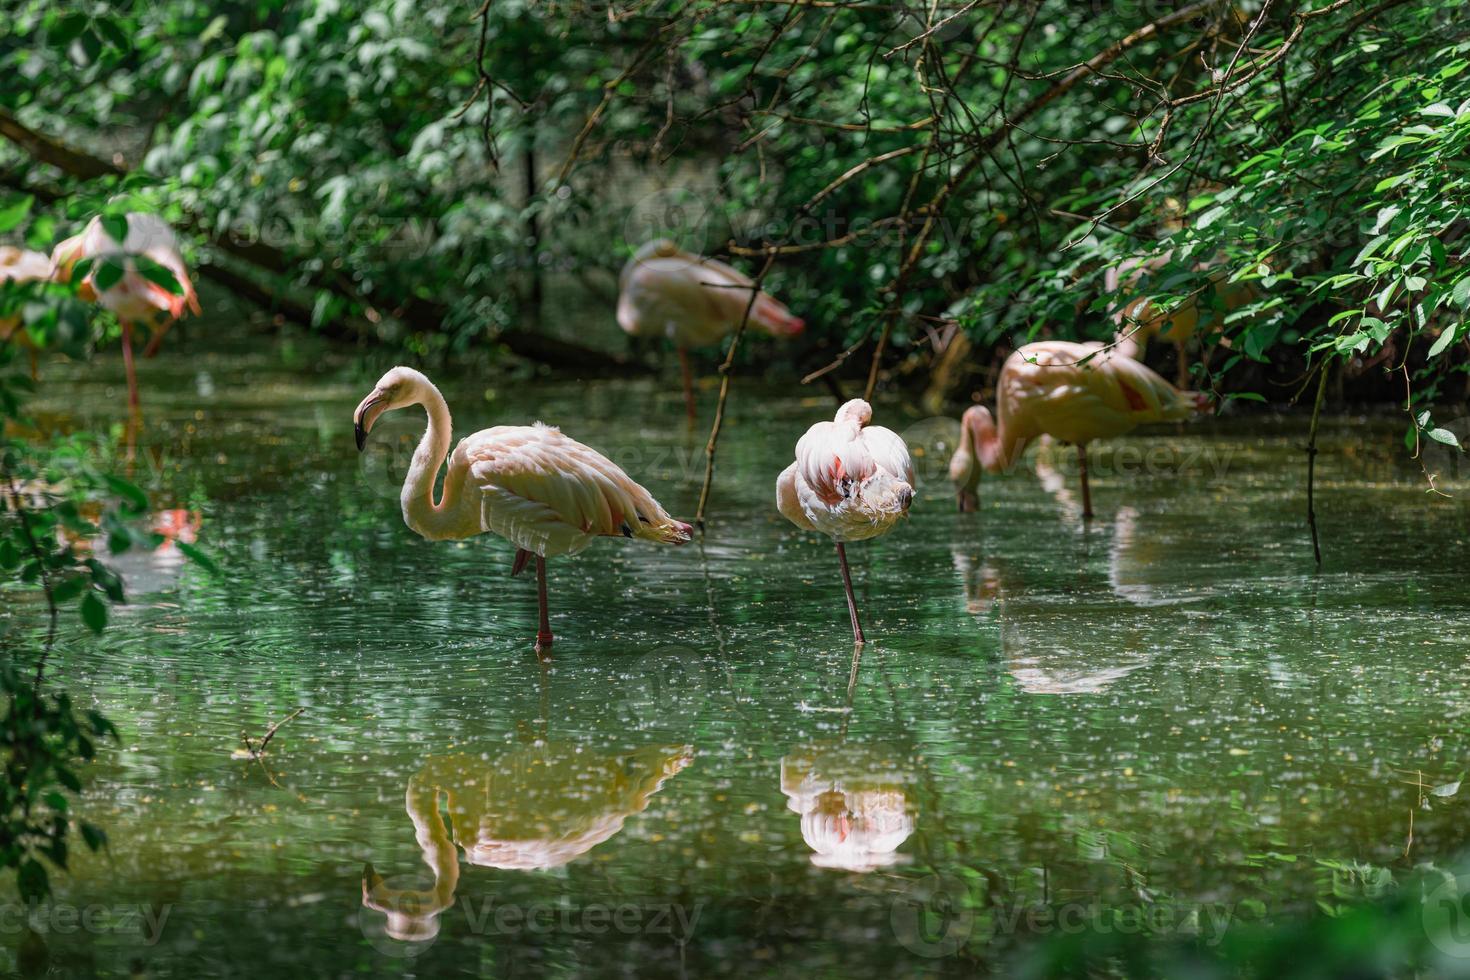 rosa flamingo im teich, weiches sonnenlicht und muschelwasserreflexion. Tierpark oder Zoo mit tropischem Gartensee. schöner flamingo im teich, ruhige exotische naturtiere foto